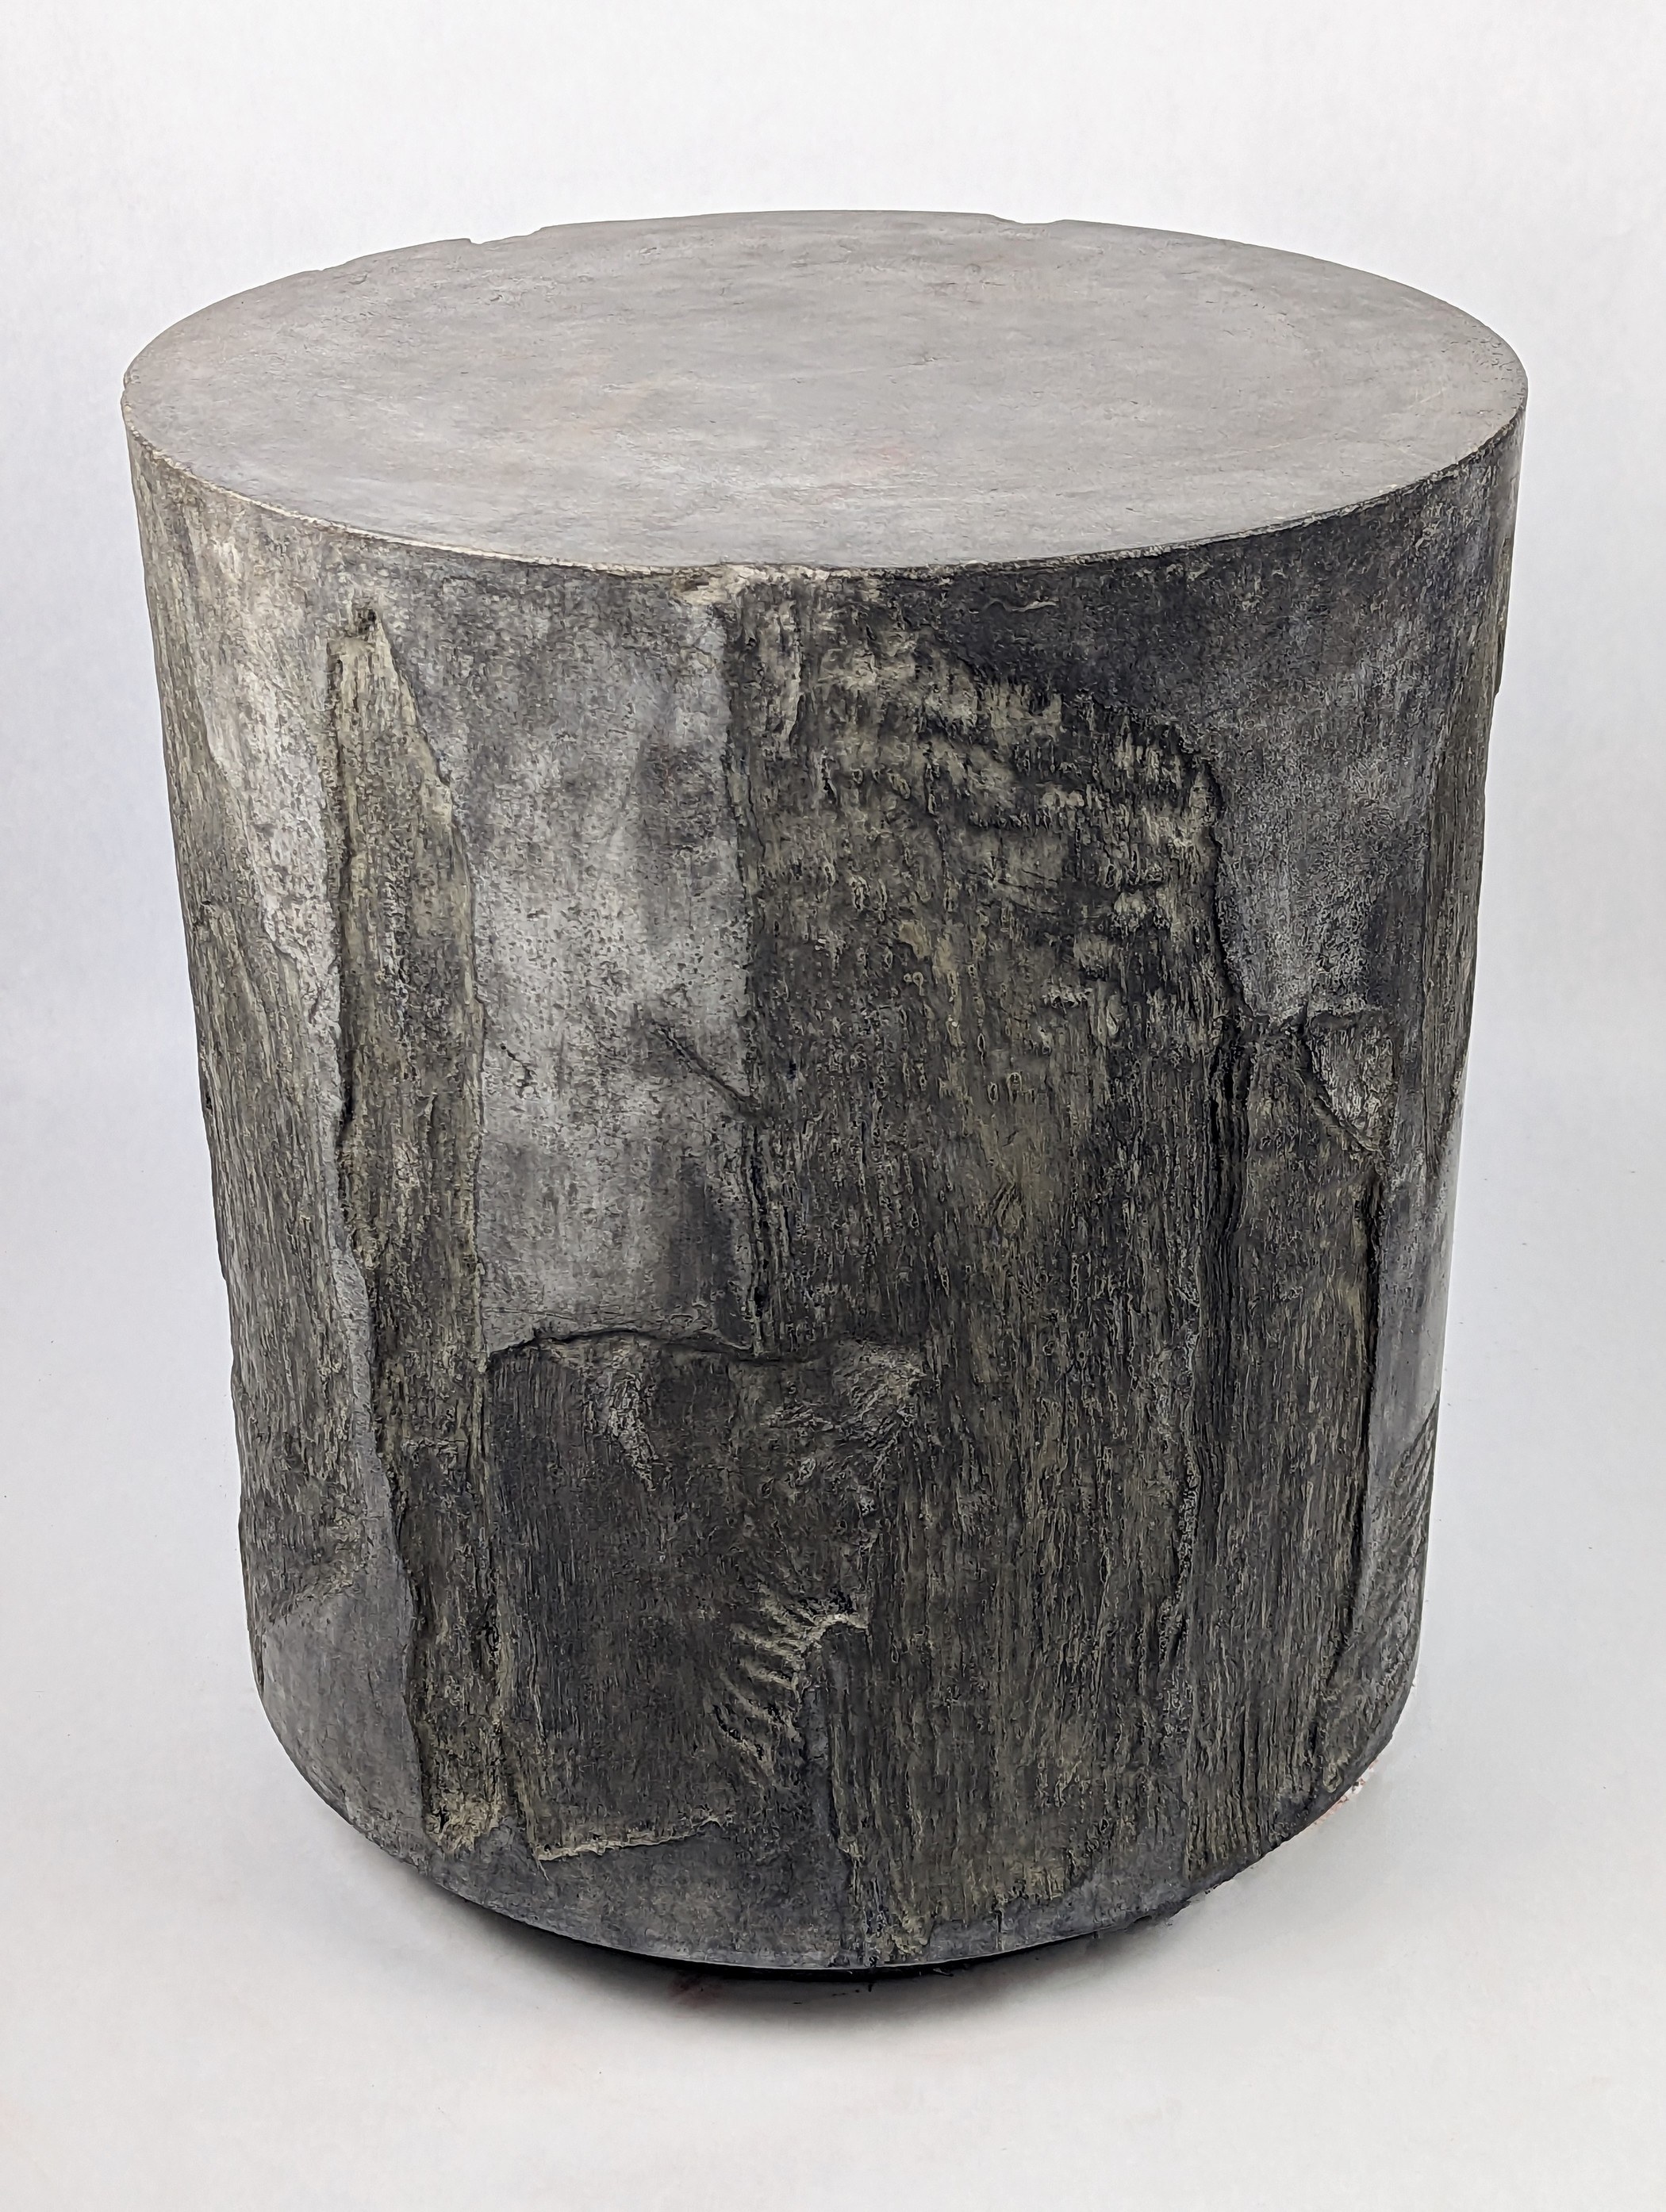 Vertigo, dark grey concrete side table with paper bark impression